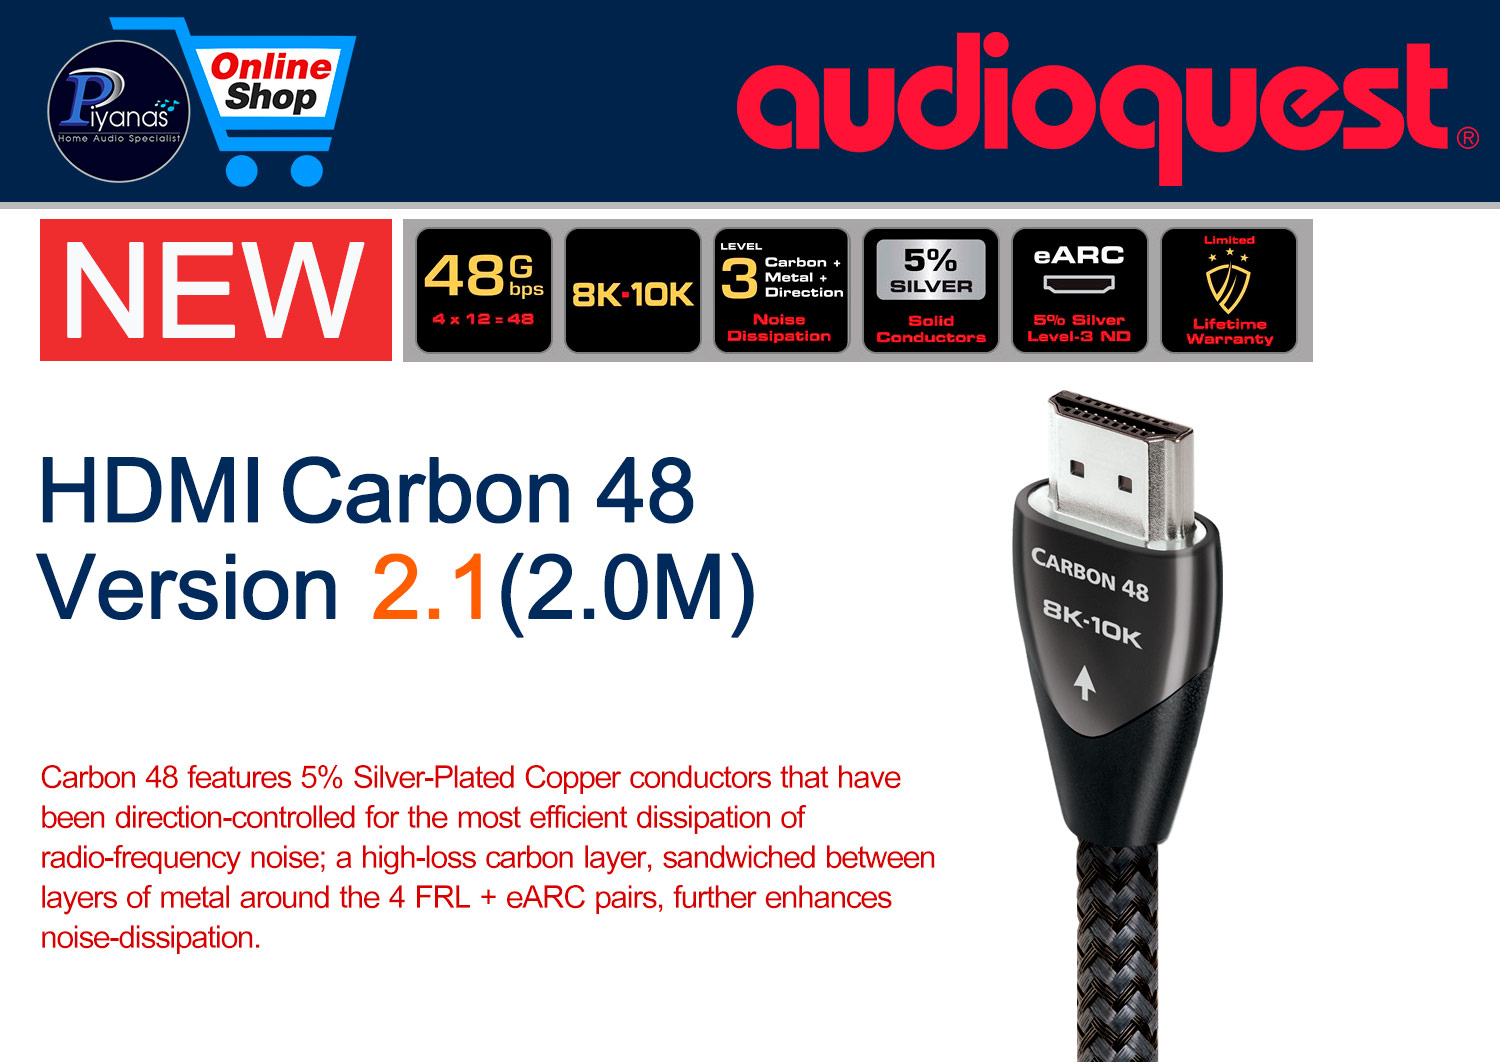 HDMI-Carbon 48 Version 2.1 (2.0M)